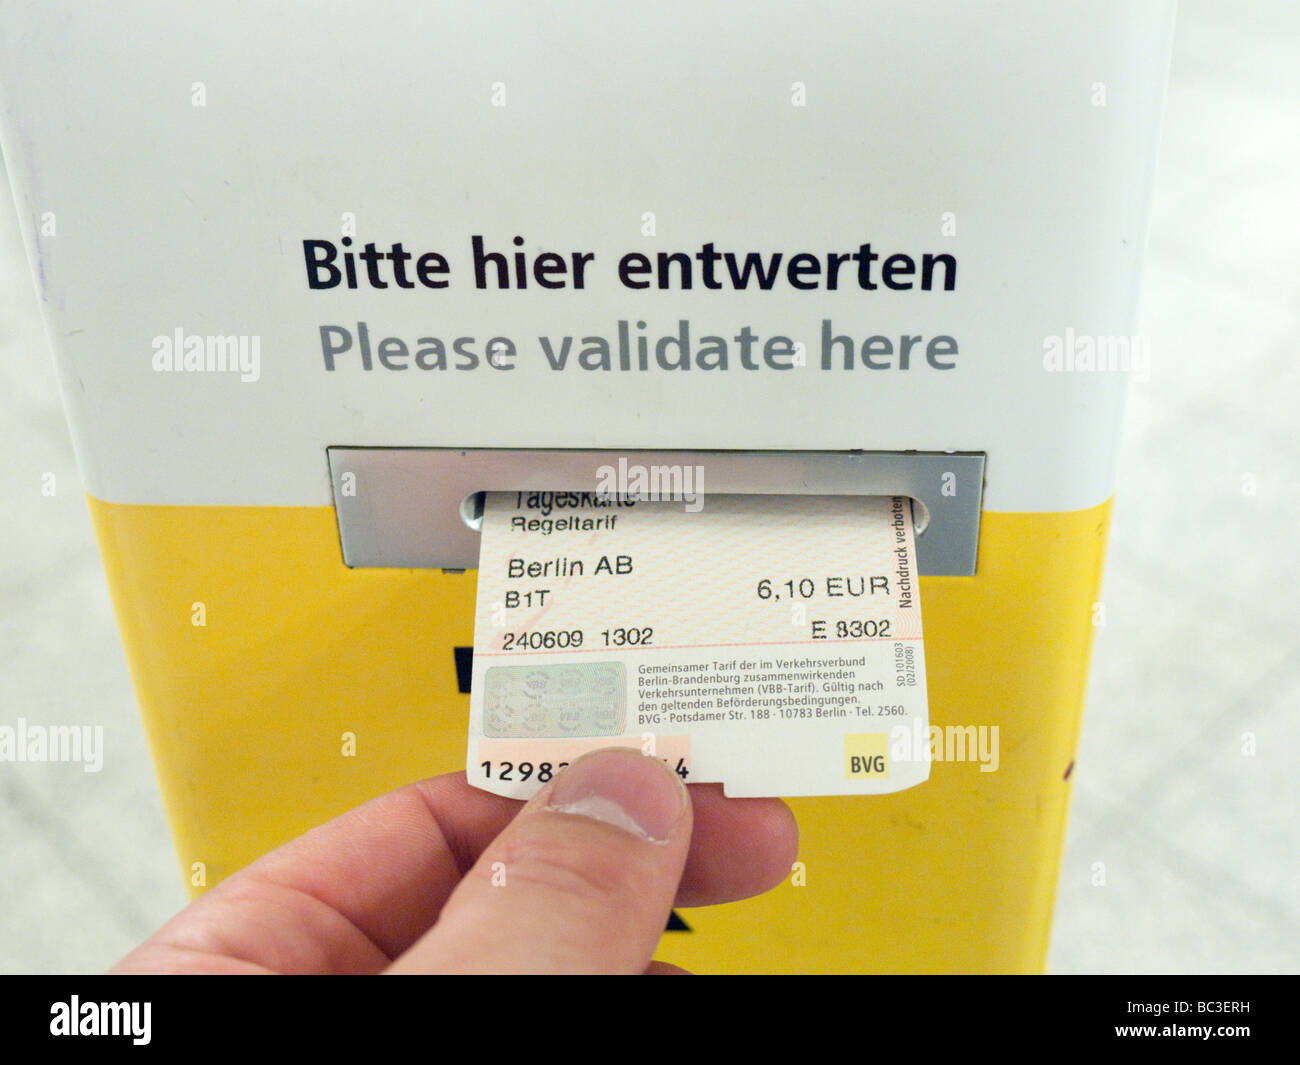 Dettaglio del biglietto della metropolitana macchina di convalida sulla piattaforma della stazione ferroviaria sotterranea a Berlino Germania Foto Stock